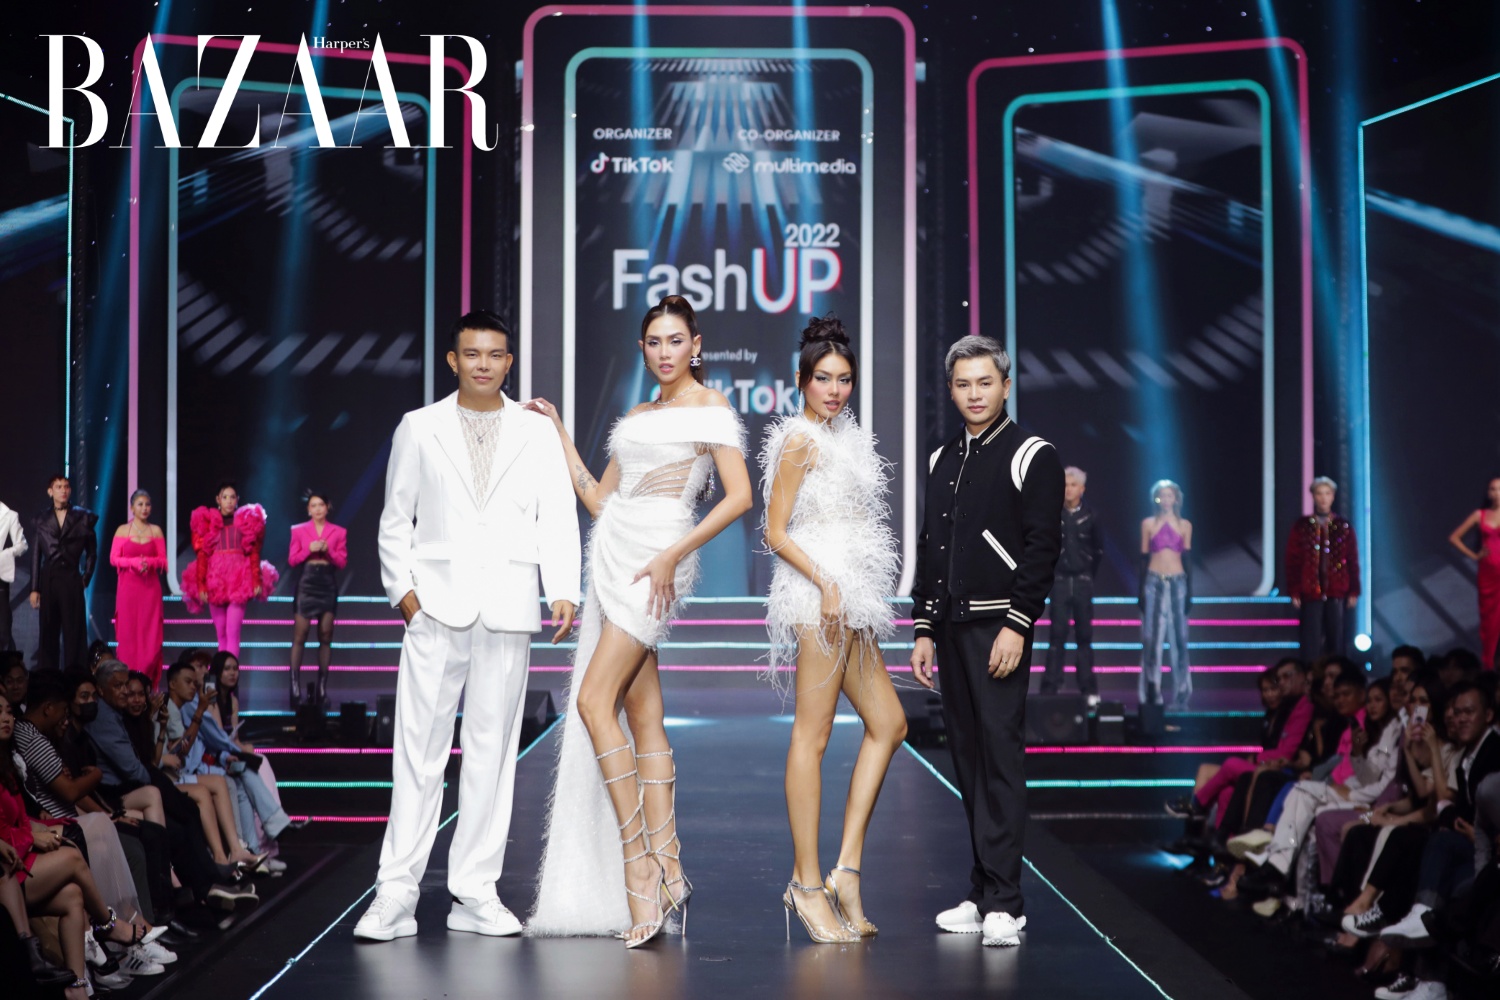 Bốn giám khảo của FashUP 2022 by TikTok: NTK Đỗ Long, siêu mẫu Võ Hoàng Yến, Á hậu Hoàn vũ Thảo Nhi Lê, chuyên gia trang điểm Nam Trung 